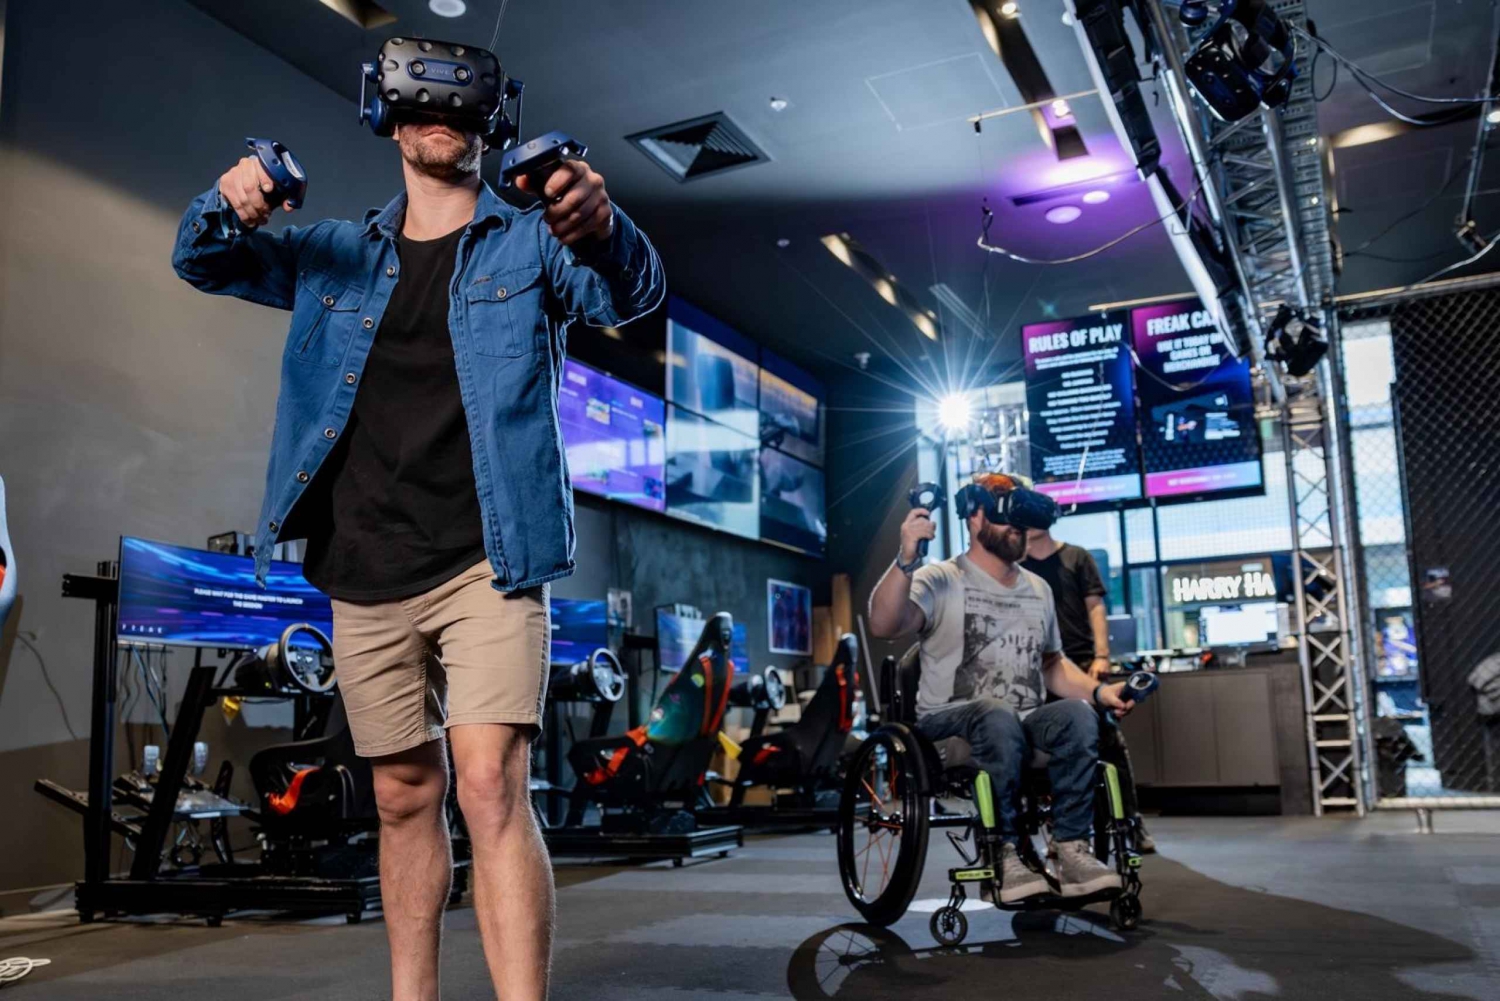 Bondi Junction: VR Escape Room Erlebnis für 2